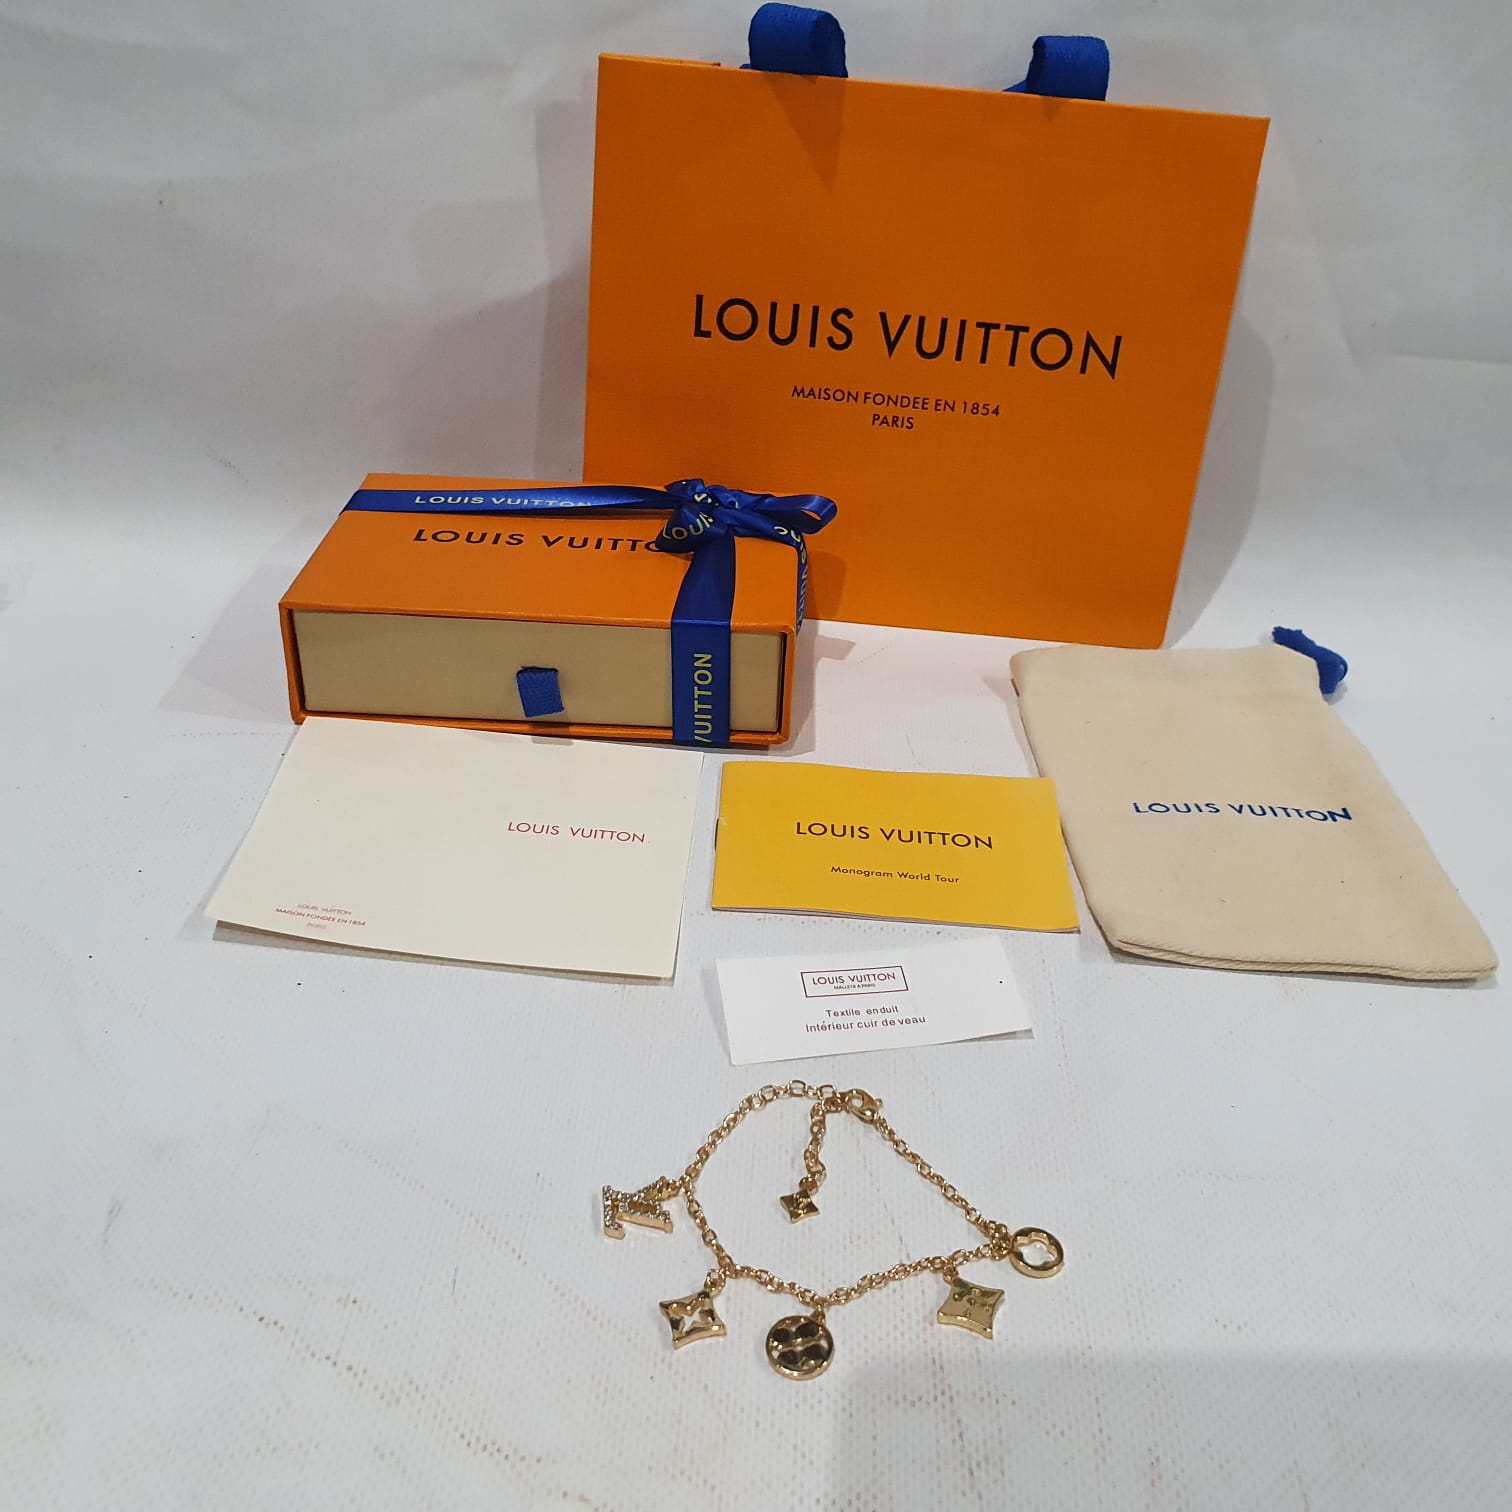 Louis Vuitton Necklace and Bracelet